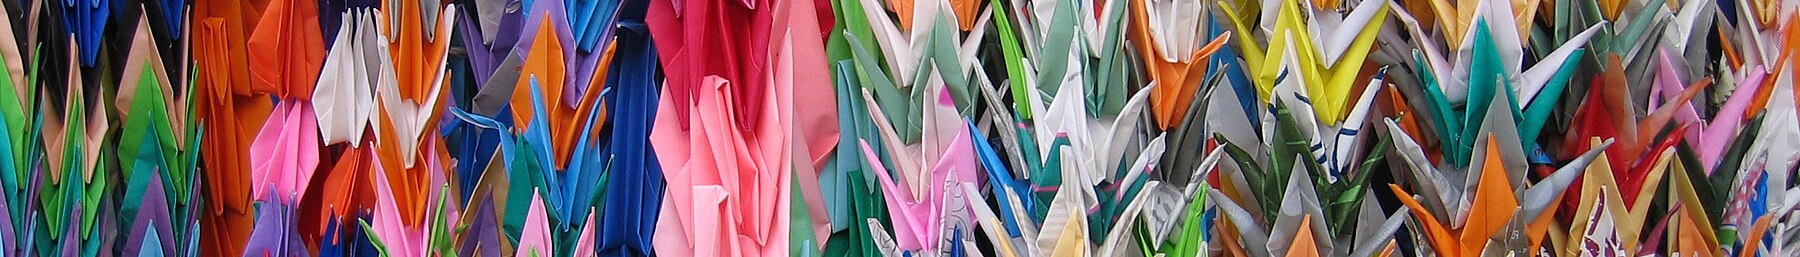 Những con hạc giấy Origami banner ở Hiroshima.jpg